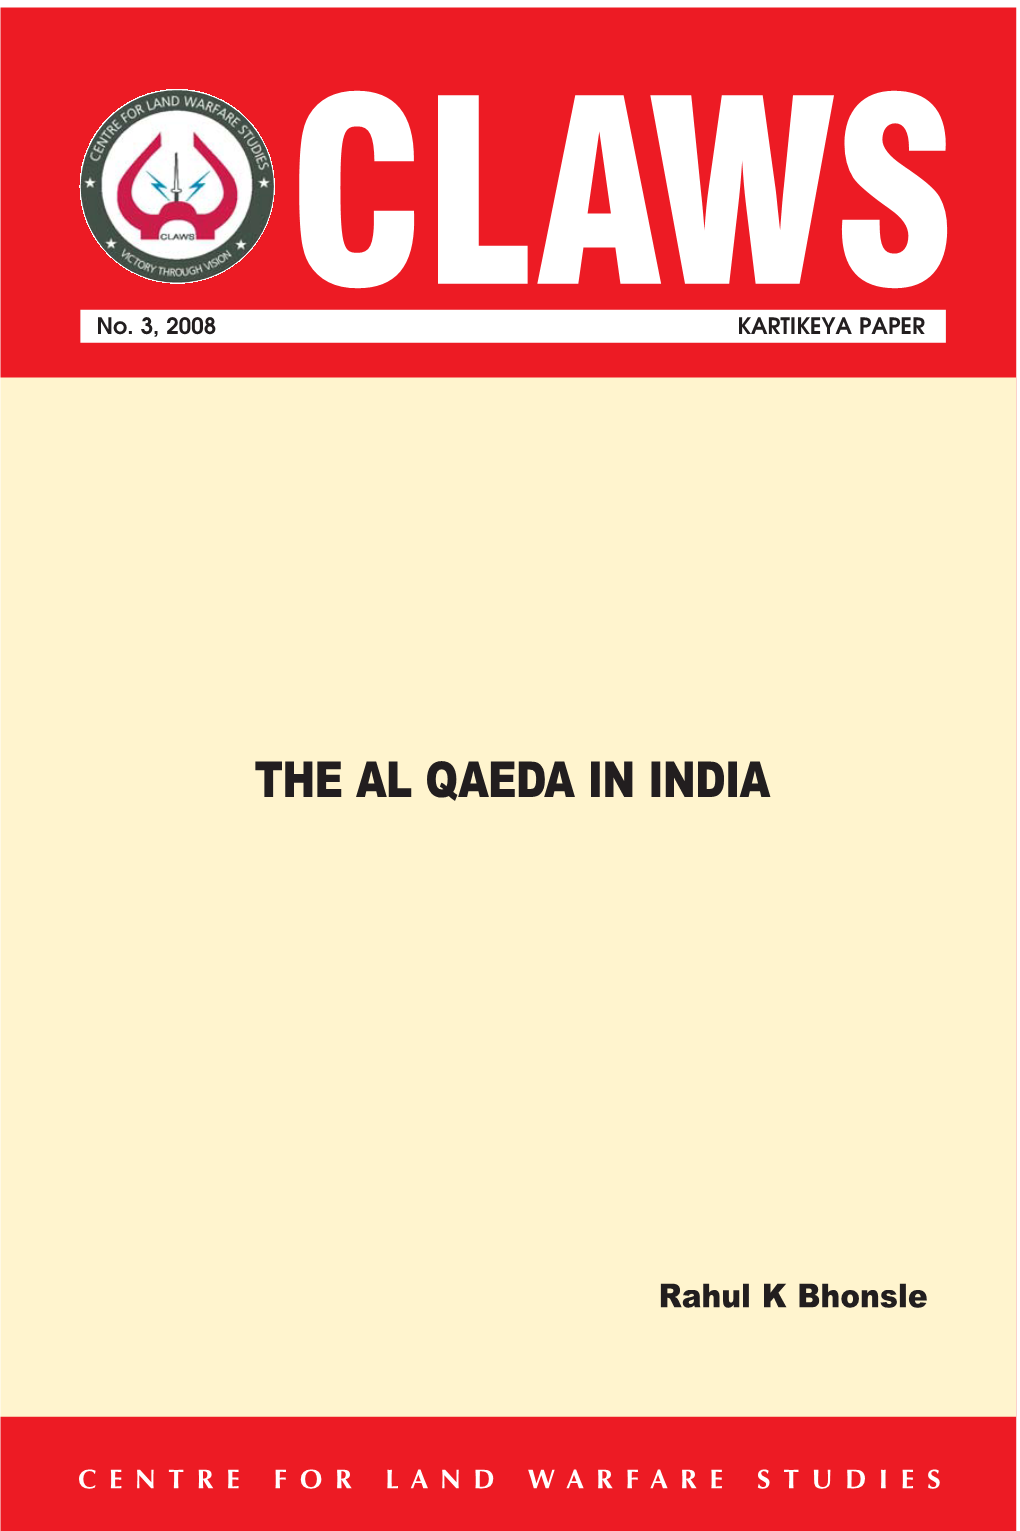 The Al Qaeda in India